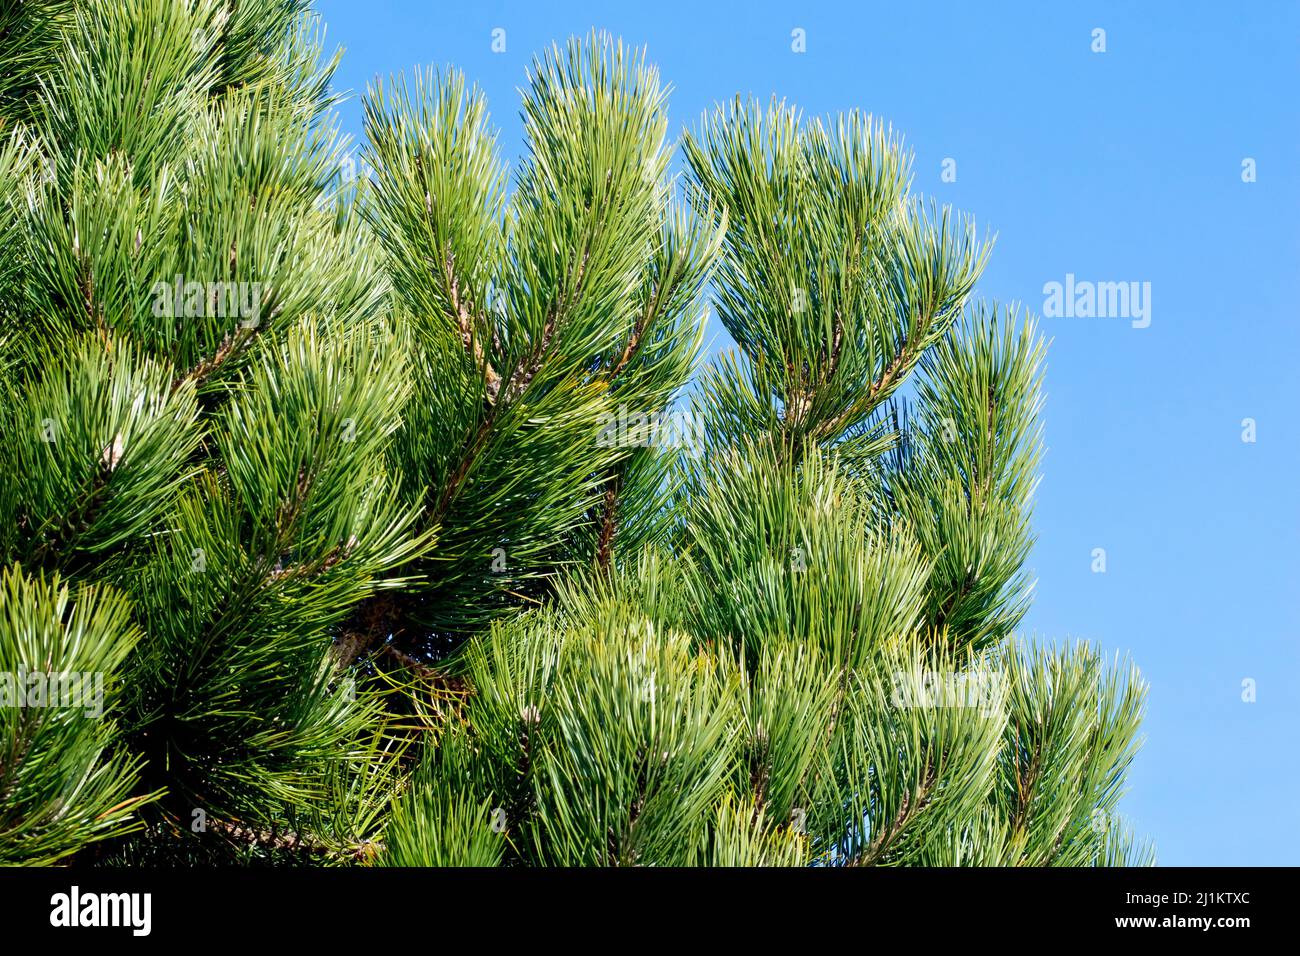 Pino nero (pinus nigra), ravvicinato tra i rami più alti di un giovane albero, che mostra gli spessi aghi verdi di pino contro un cielo blu. Foto Stock